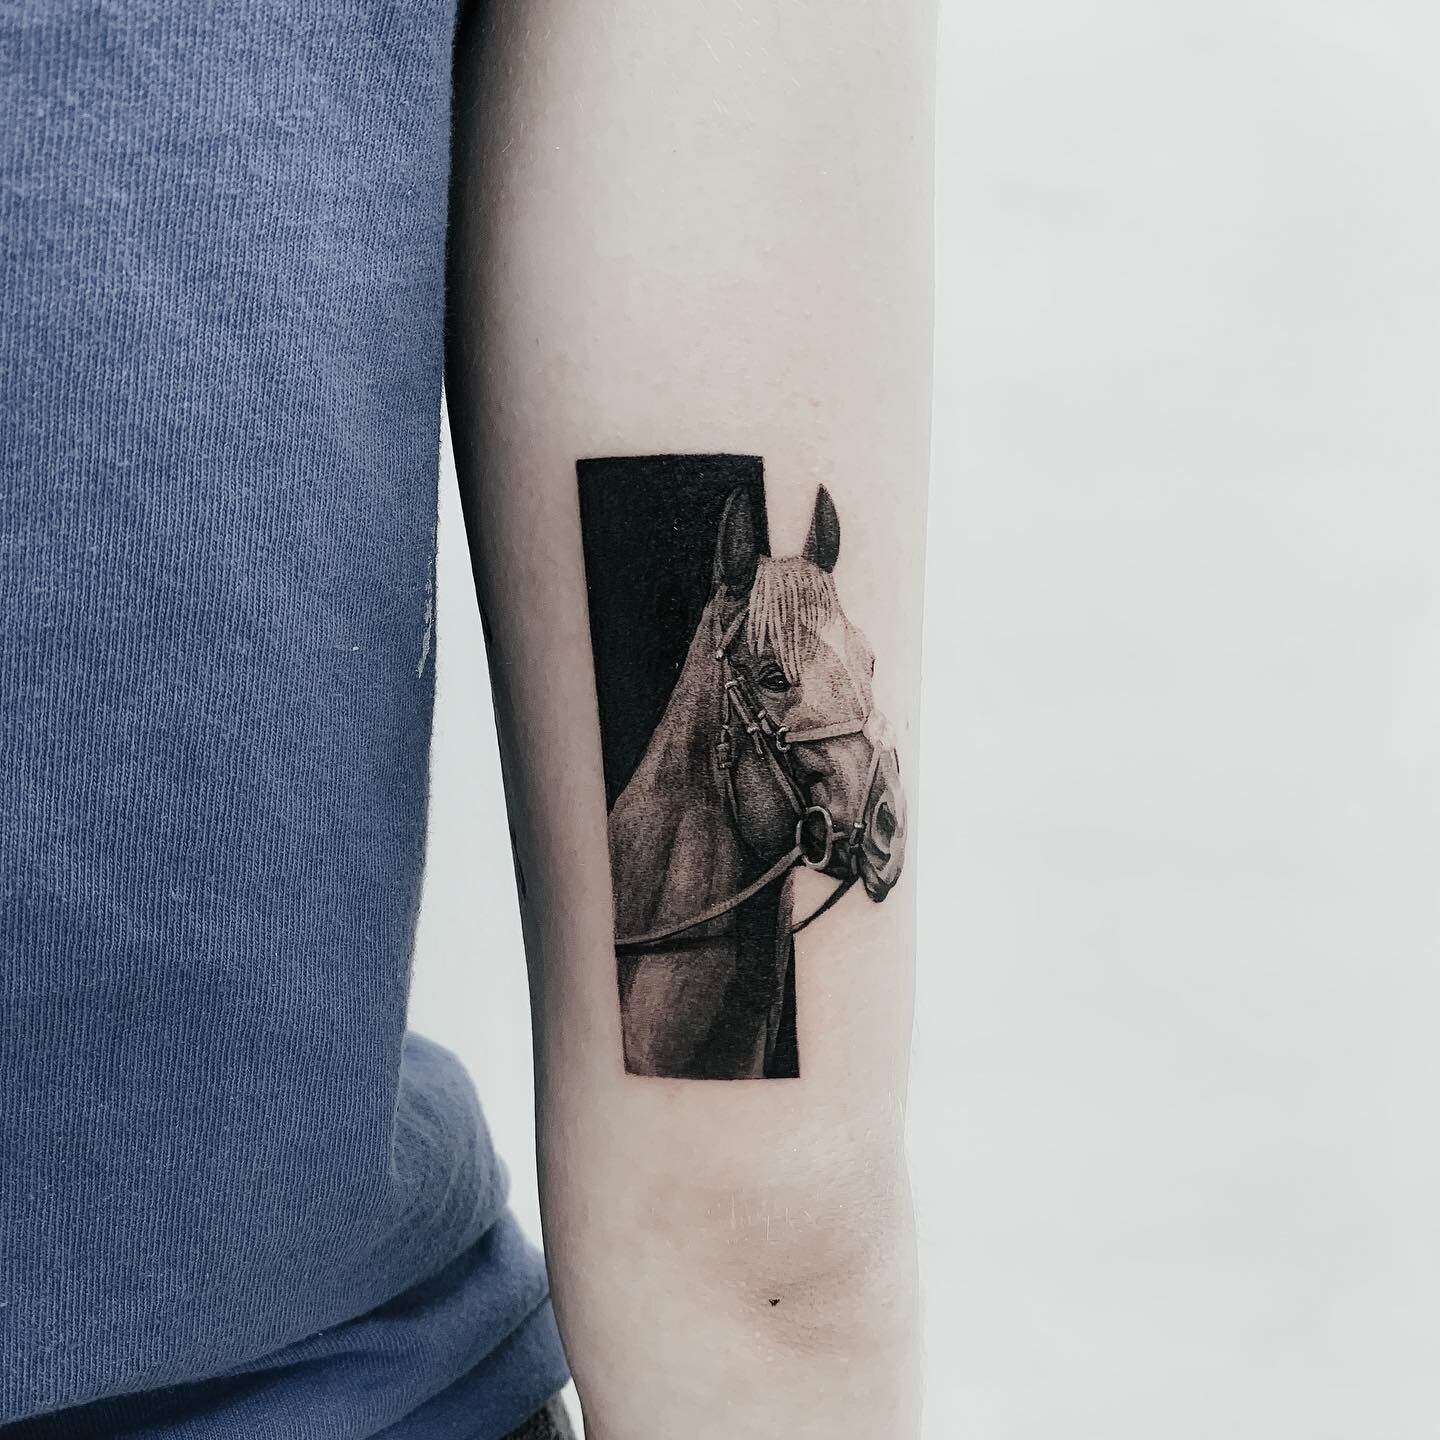 🐎
.
Done @inkandwatertattoo
.
.
#tattoo #tatt #realismtattoo #tattoostyle #torontotattoo #tattootoronto #black #blackwork #linework #skinart #torontoinknews #newtattoo #ink #tattooist #tattooart #tattooartist #tattoodesign #tattoostuff #art #horse #